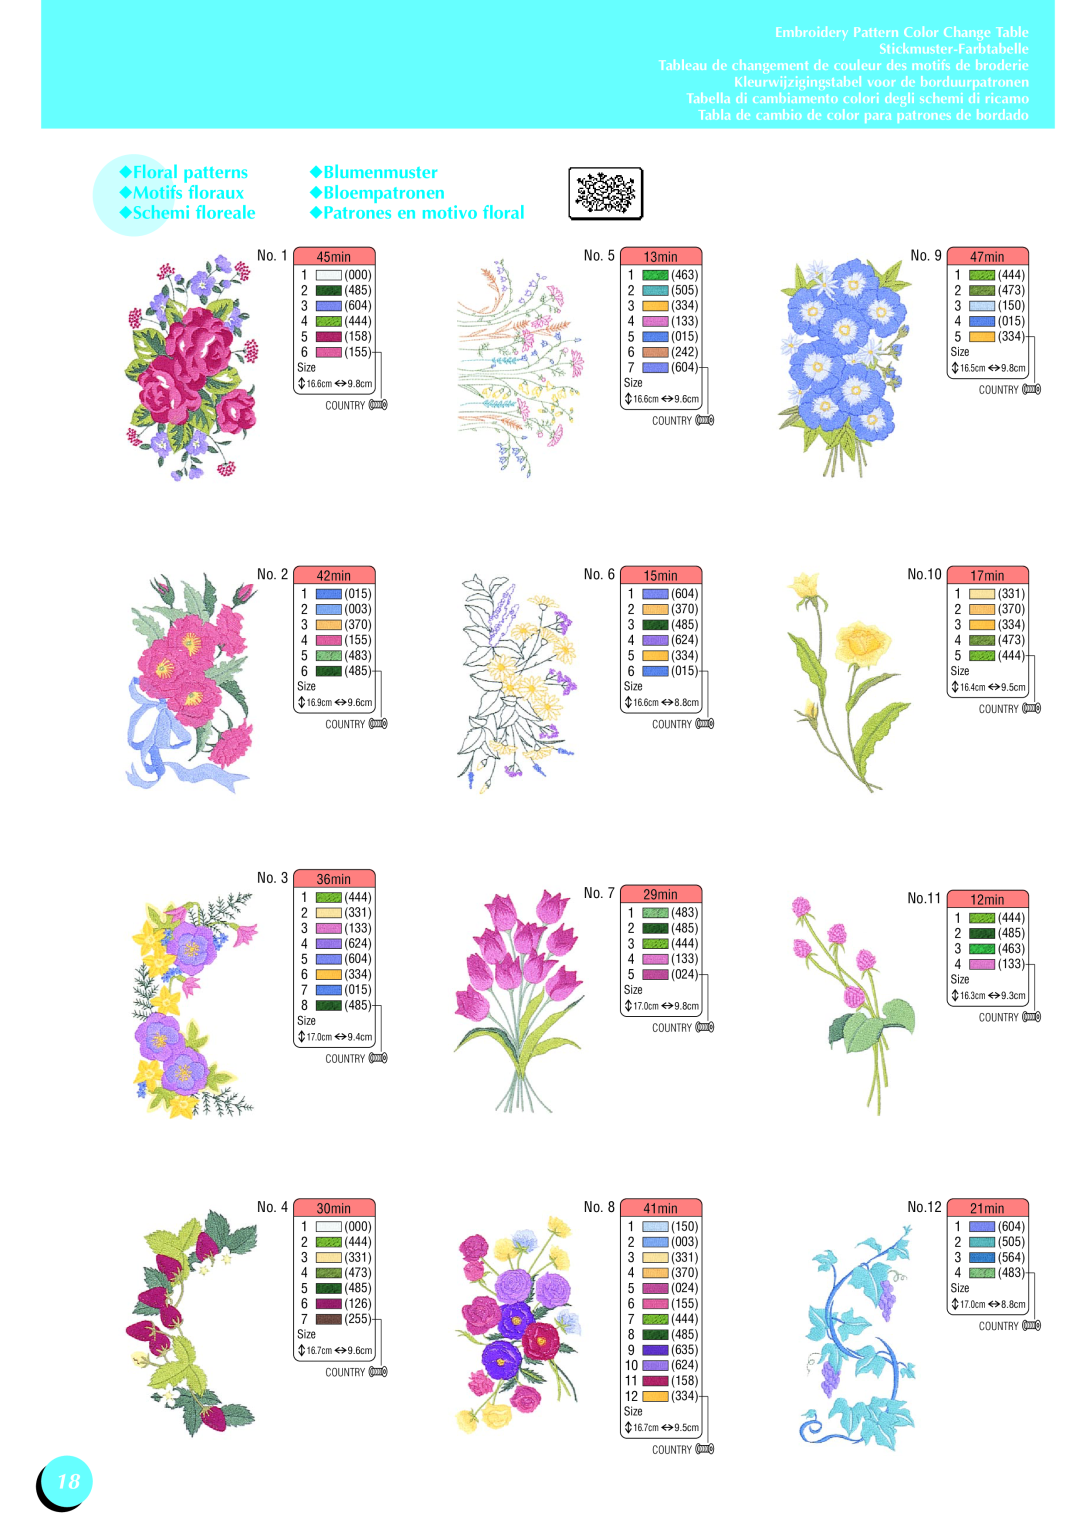 Brother XD0556-051, Innov-is 1500 Floral patterns, Blumenmuster, Motifs floraux, Bloempatronen, Schemi floreale, 45min 